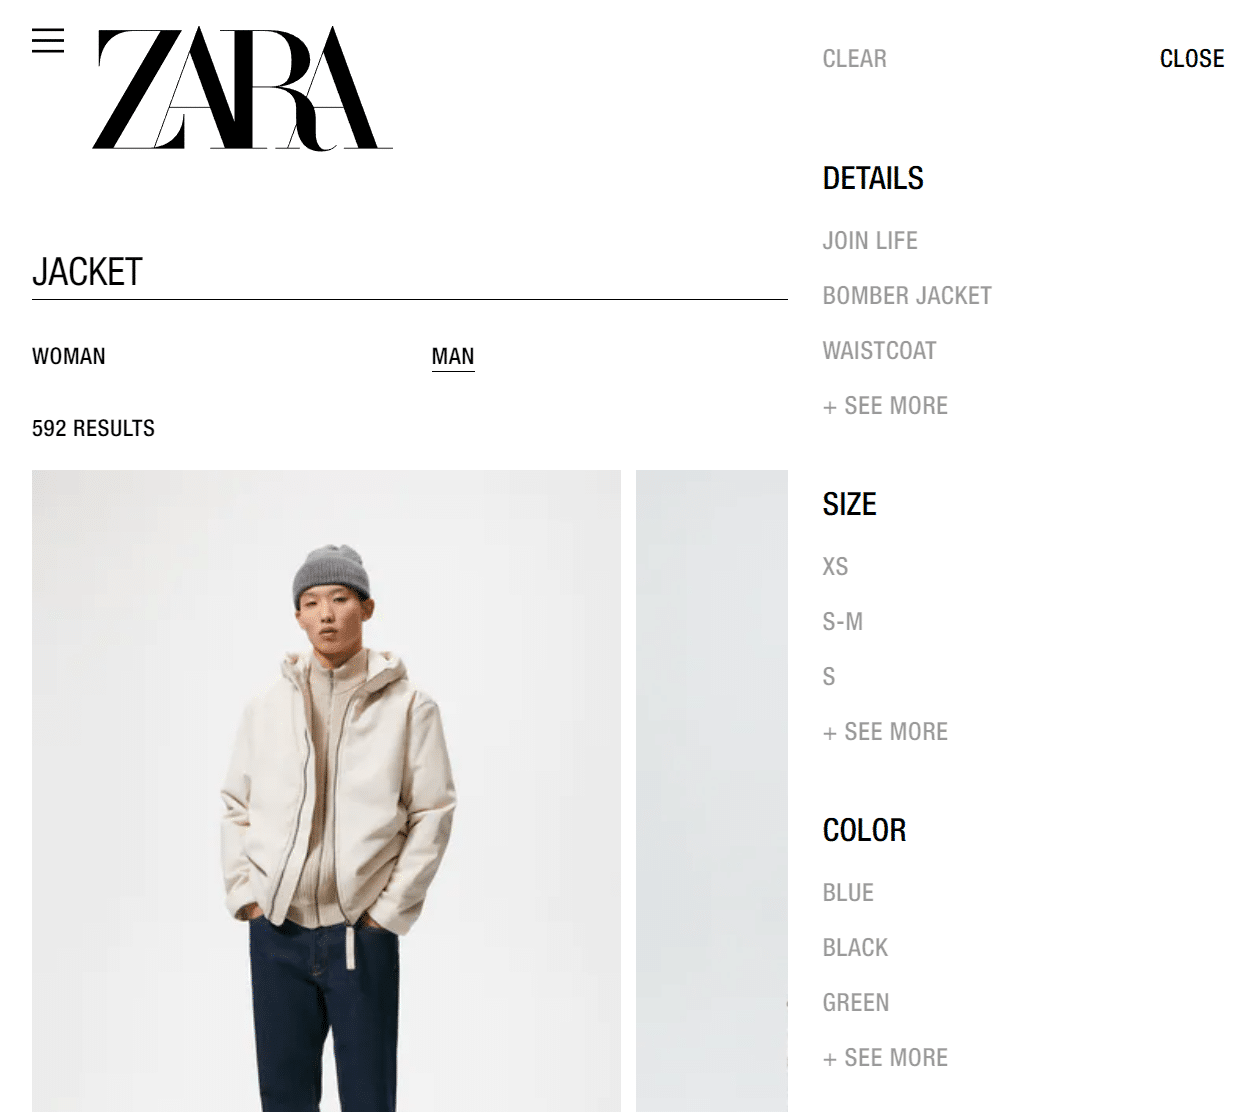 The Zara online shop attributes